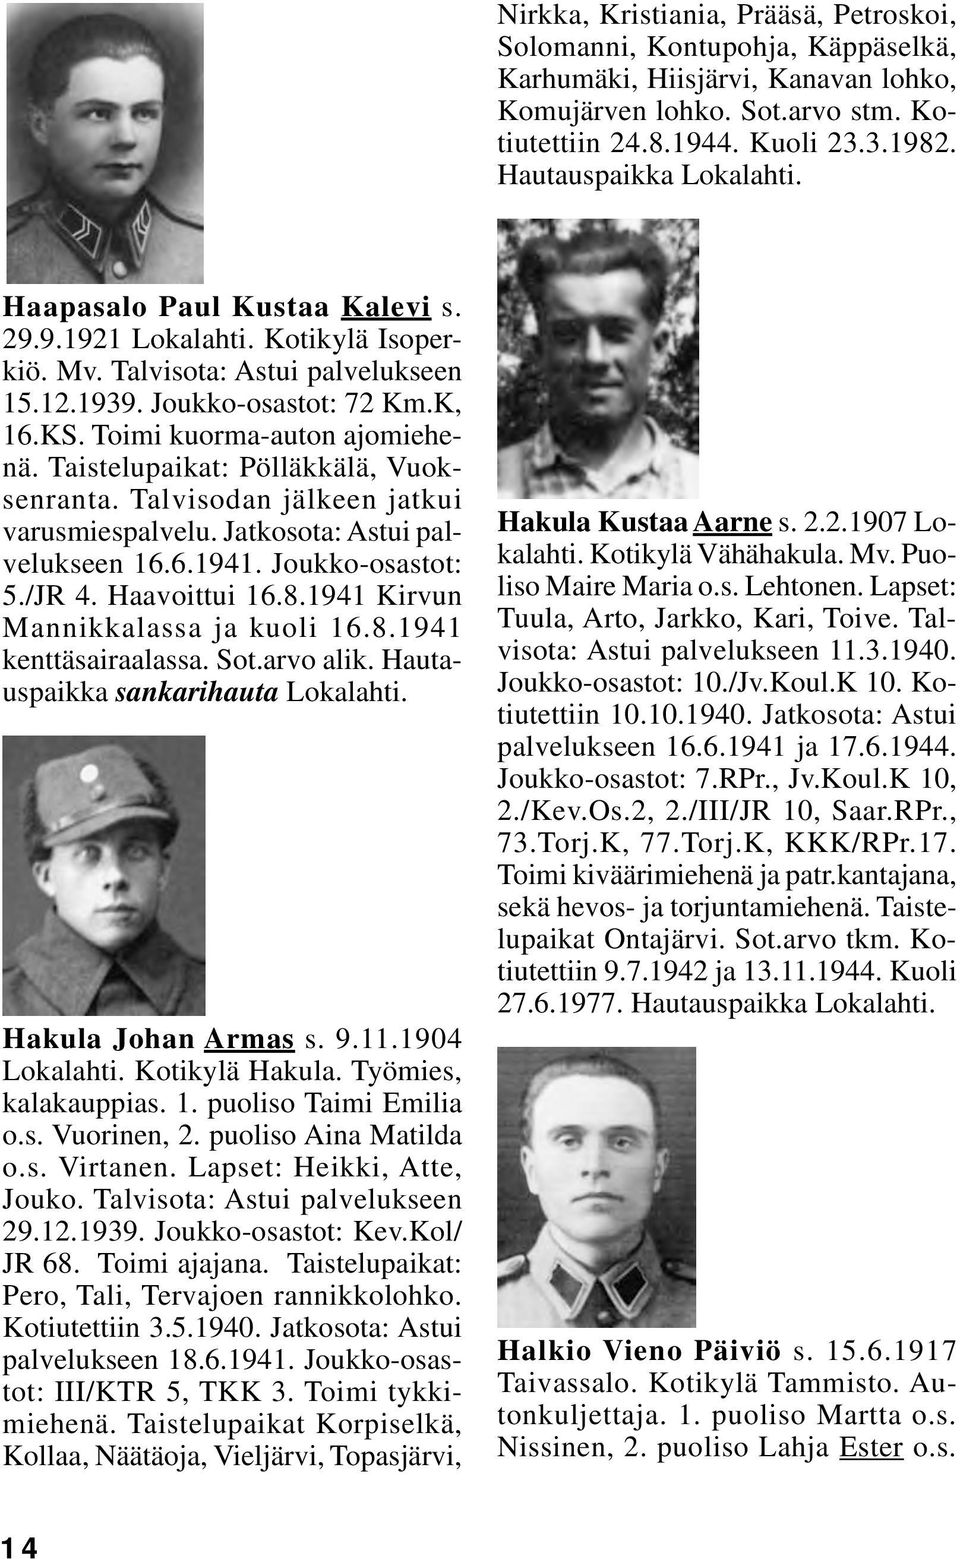 Taistelupaikat: Pölläkkälä, Vuoksenranta. Talvisodan jälkeen jatkui varusmiespalvelu. Jatkosota: Astui palvelukseen 16.6.1941. Joukko-osastot: 5./JR 4. Haavoittui 16.8.